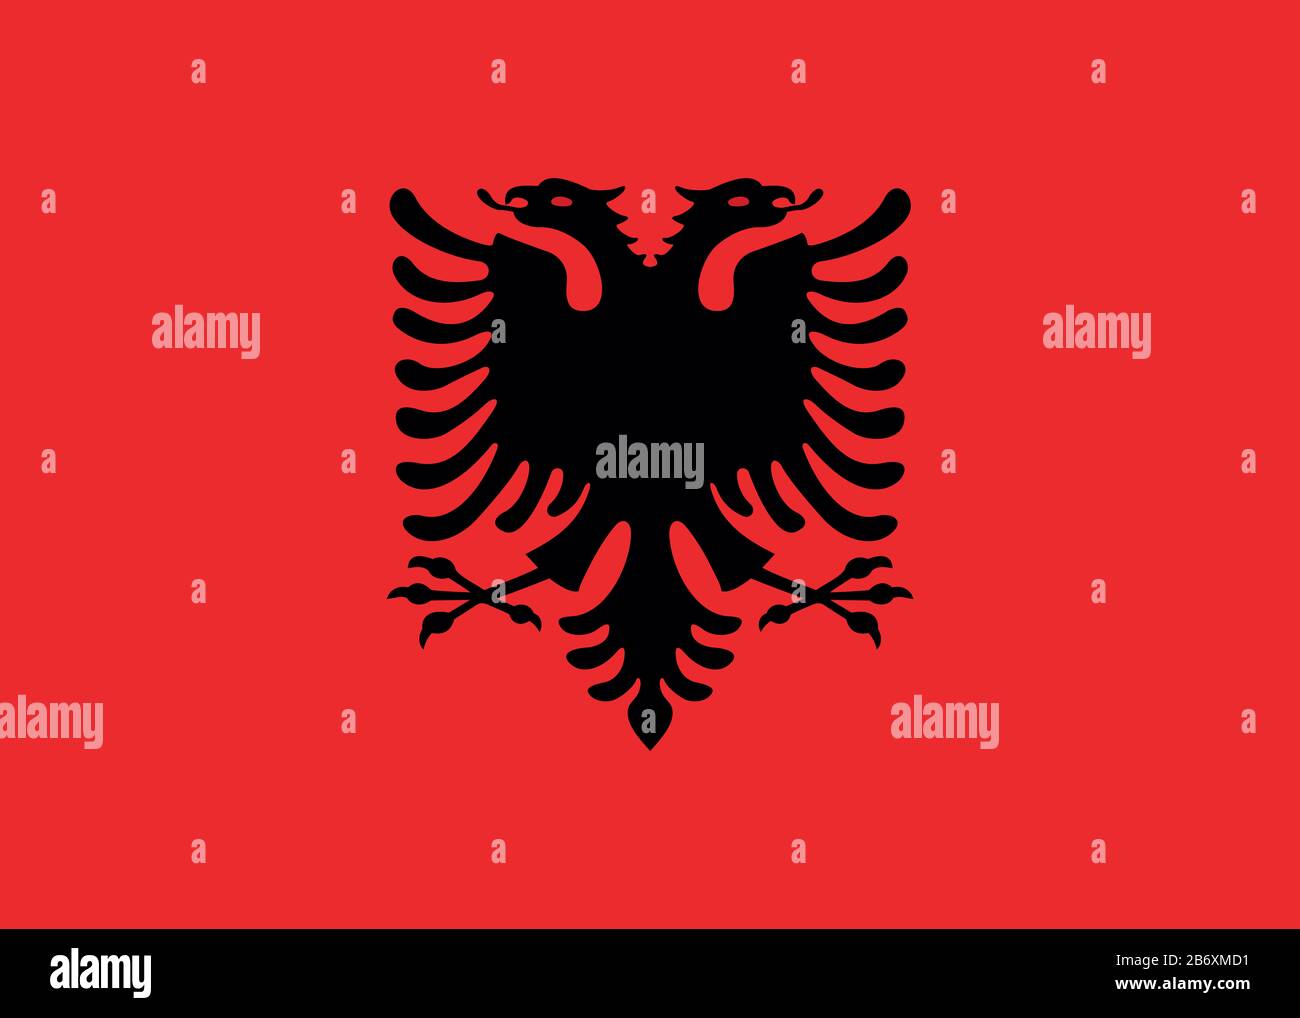 Flagge Albaniens - Standardverhältnis der albanischen Flagge - True RGB-Farbmodus Stockfoto